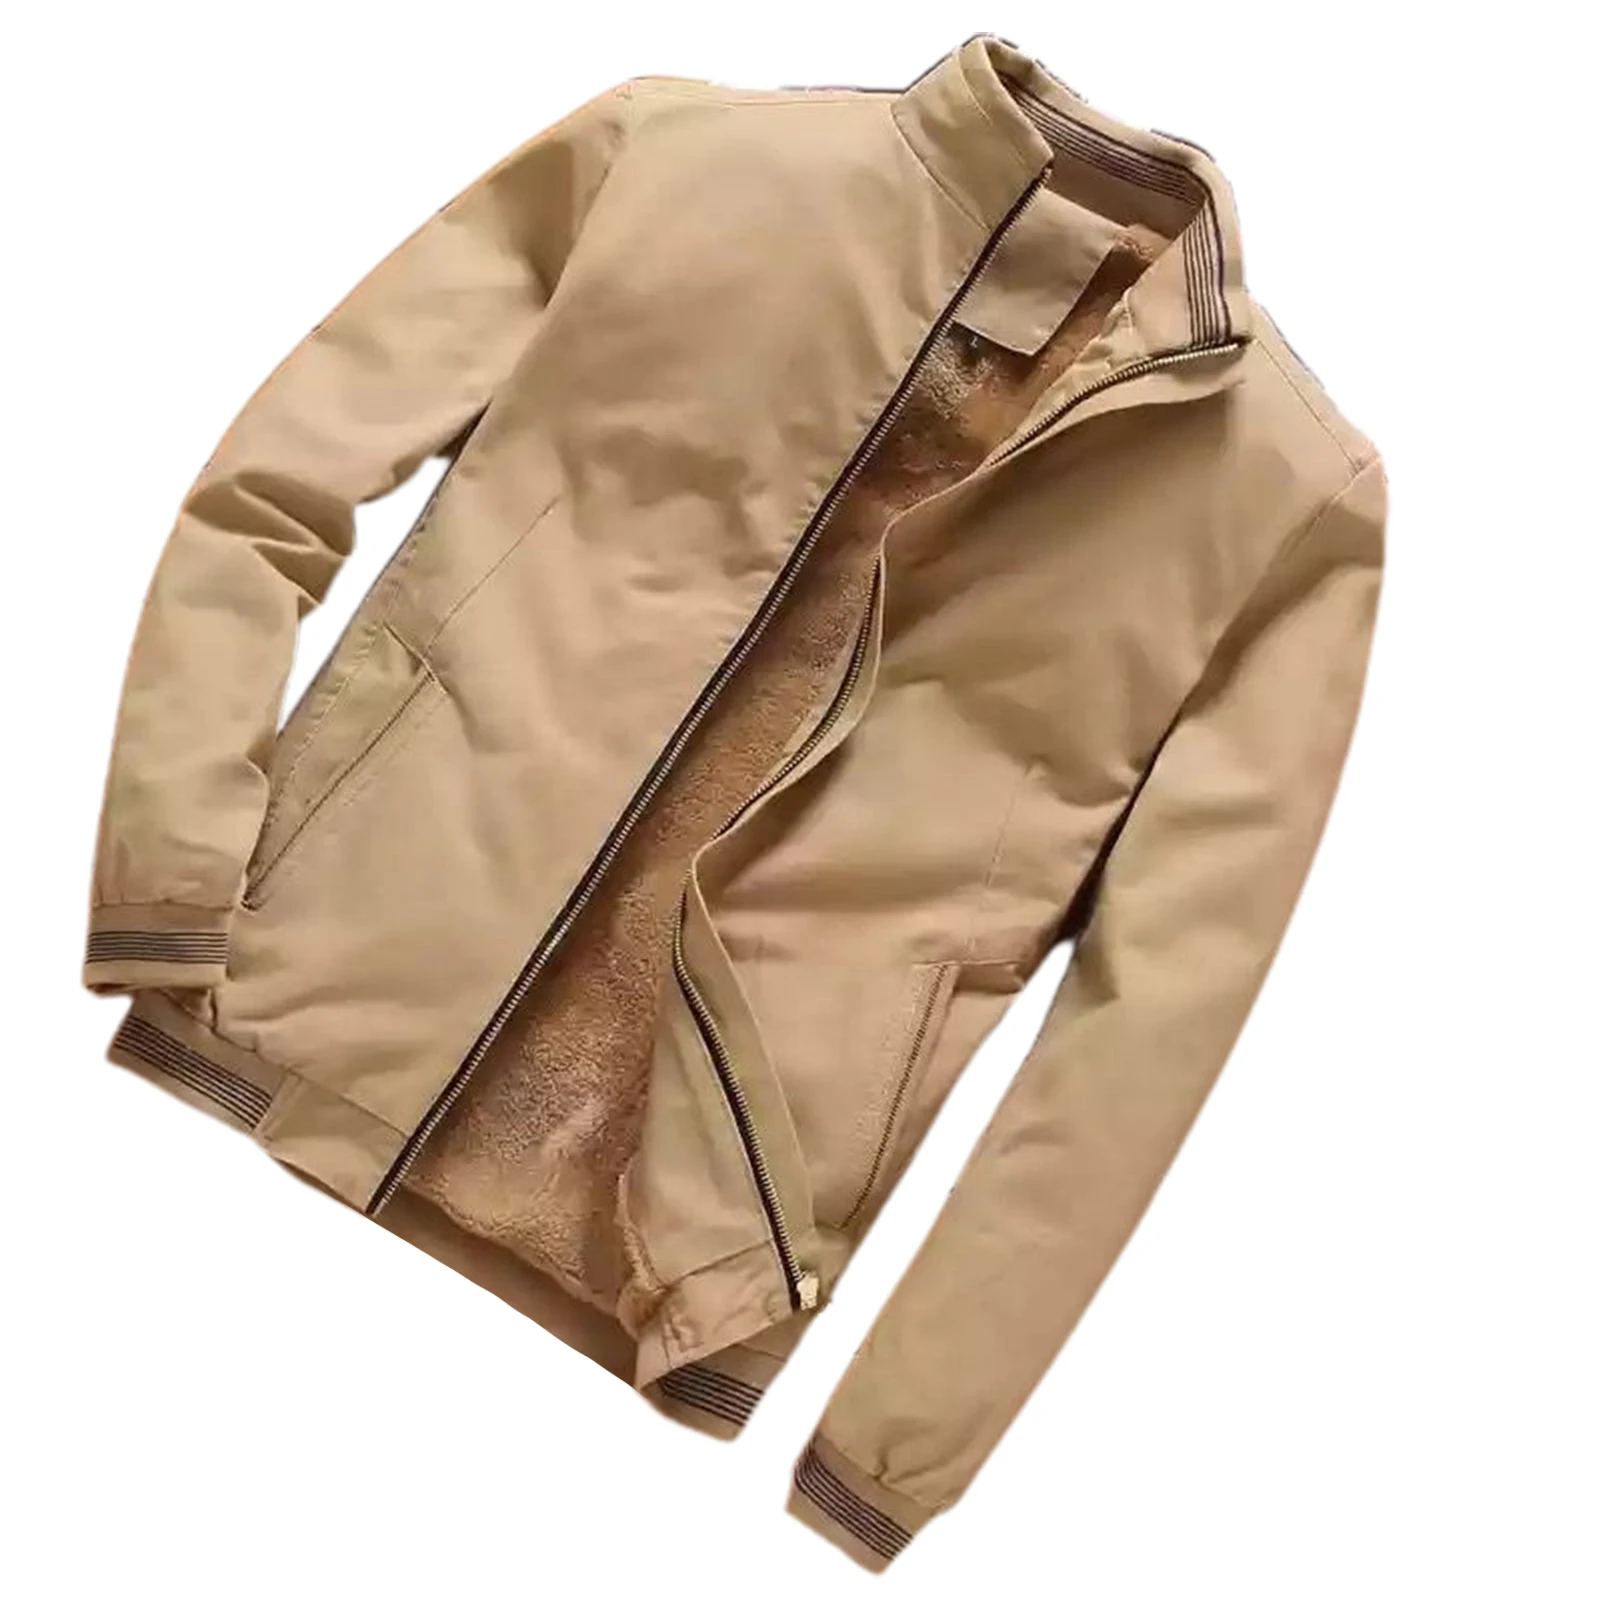 

Men's Full-Zip Polar Fleece Jacket Outdoor Coat with Pockets Birthday Gift for Boyfriend Brothers